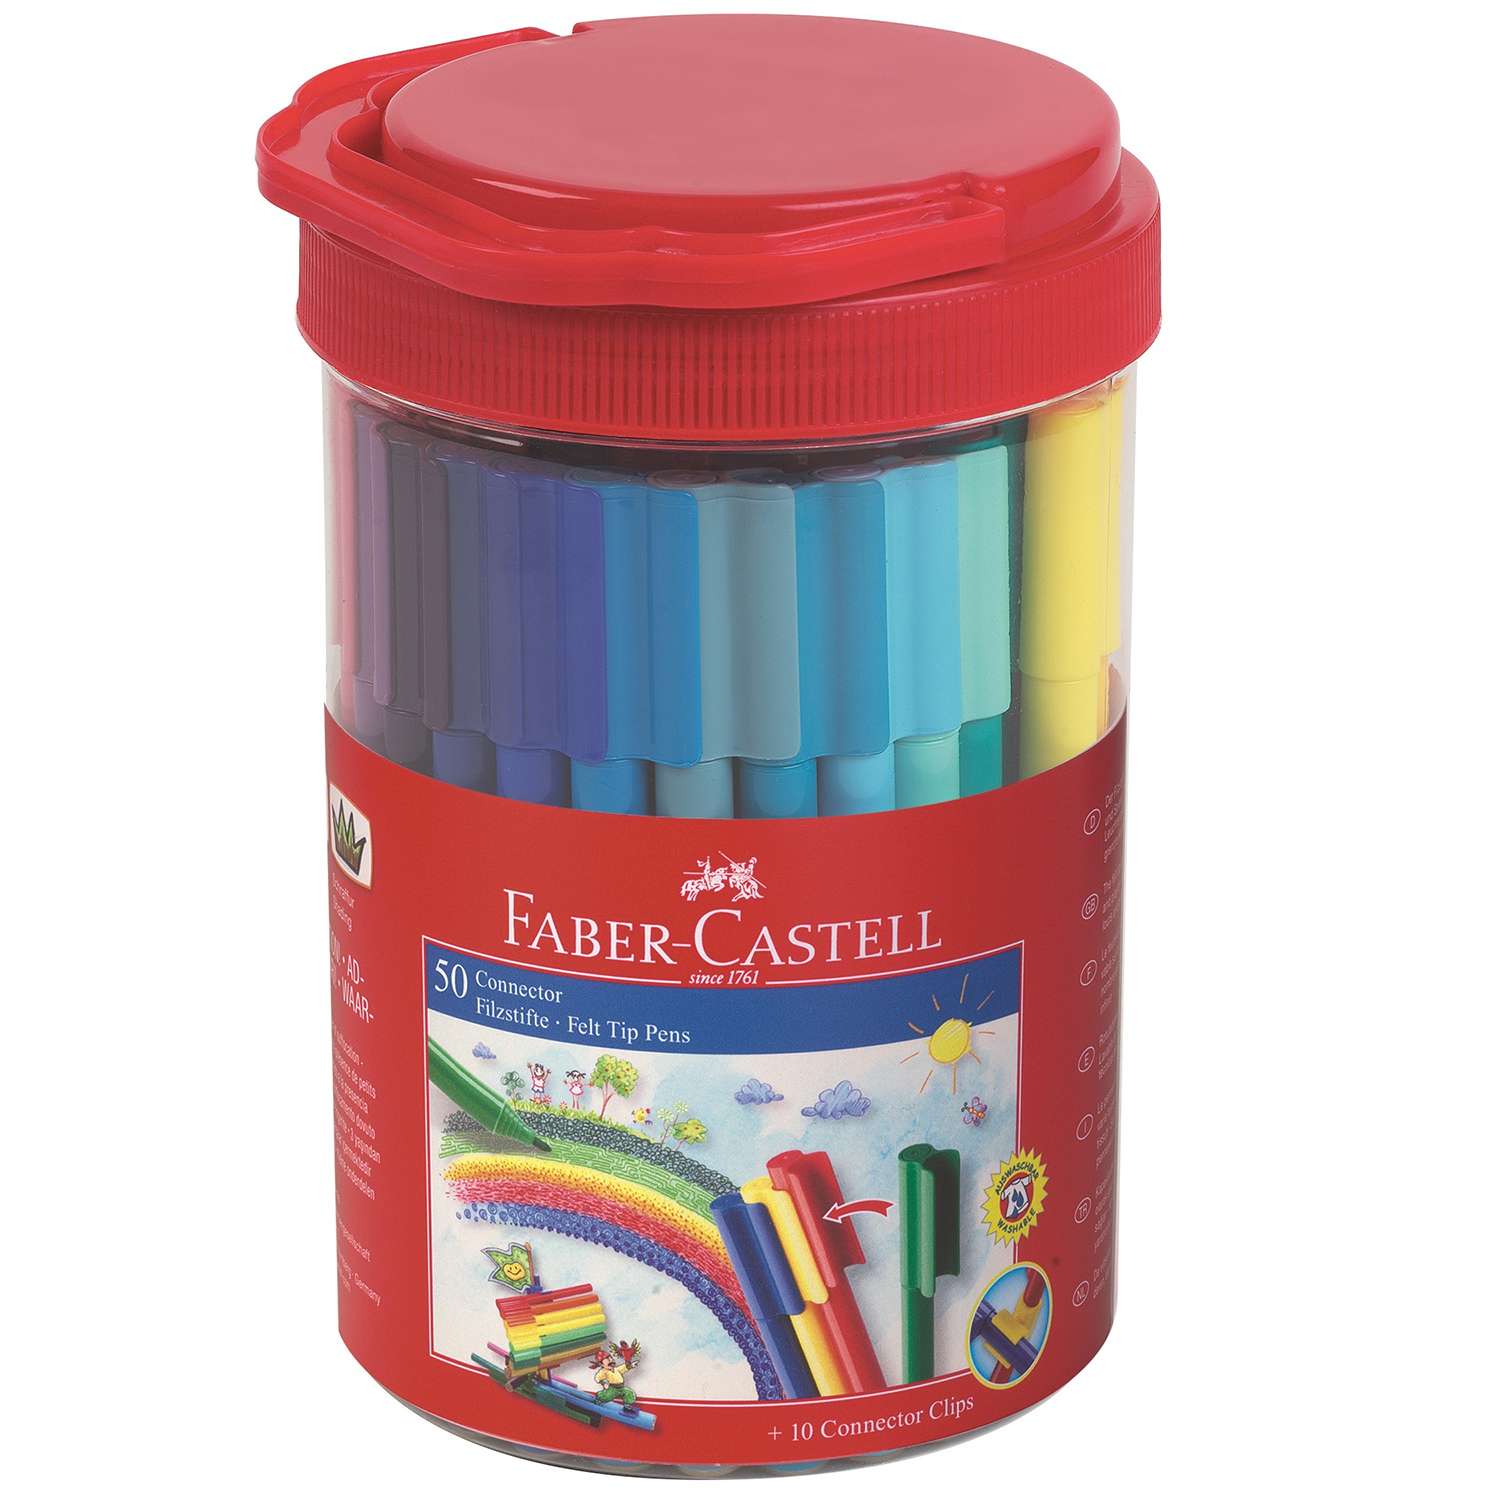 Подарочный набор Faber Castell фломастеров Connector 50 фломастера+10 клипов для соединения - фото 1